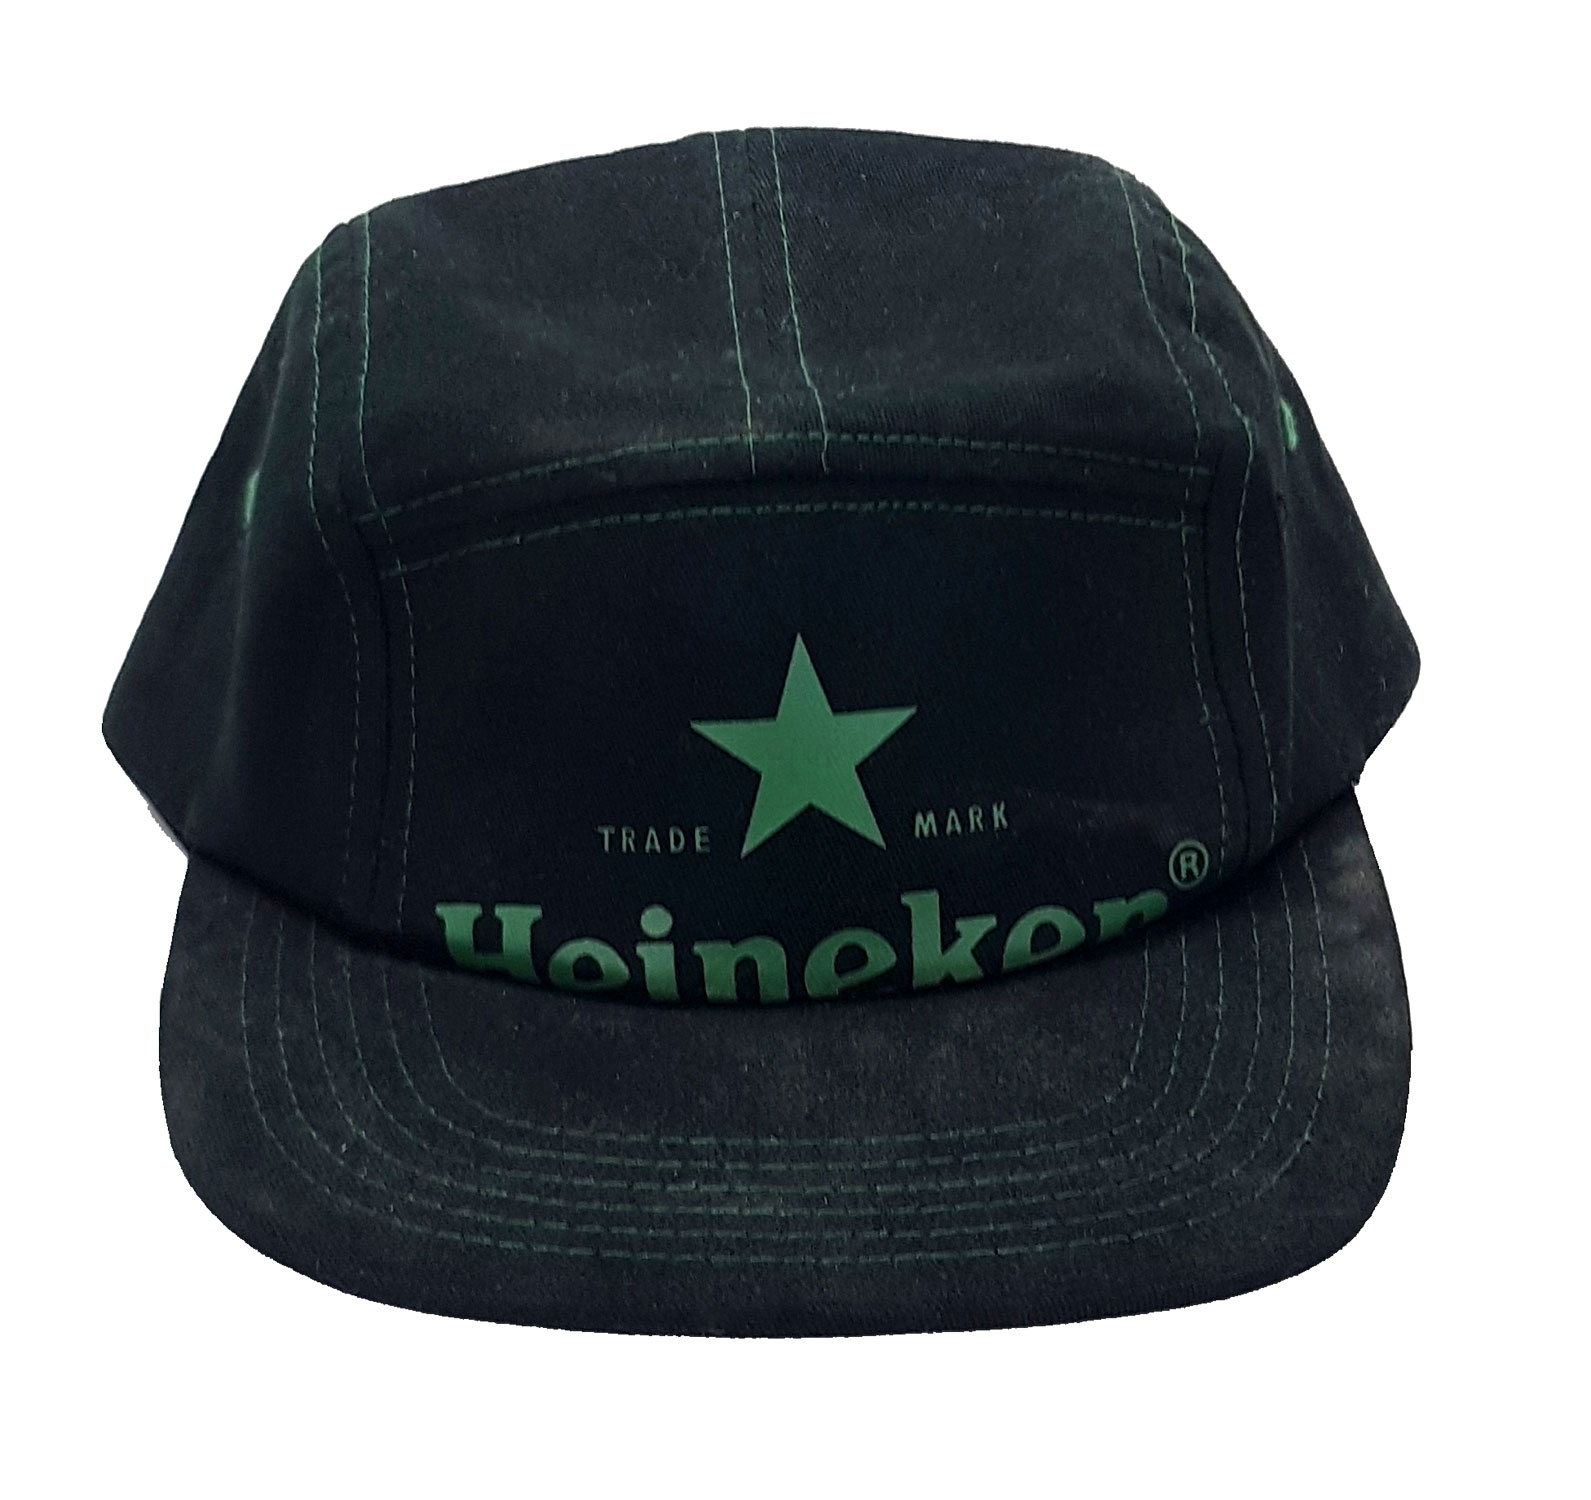 2x Heineken Kappe Basecap Cap Mütze schwarz grün Material : 100% Cotton